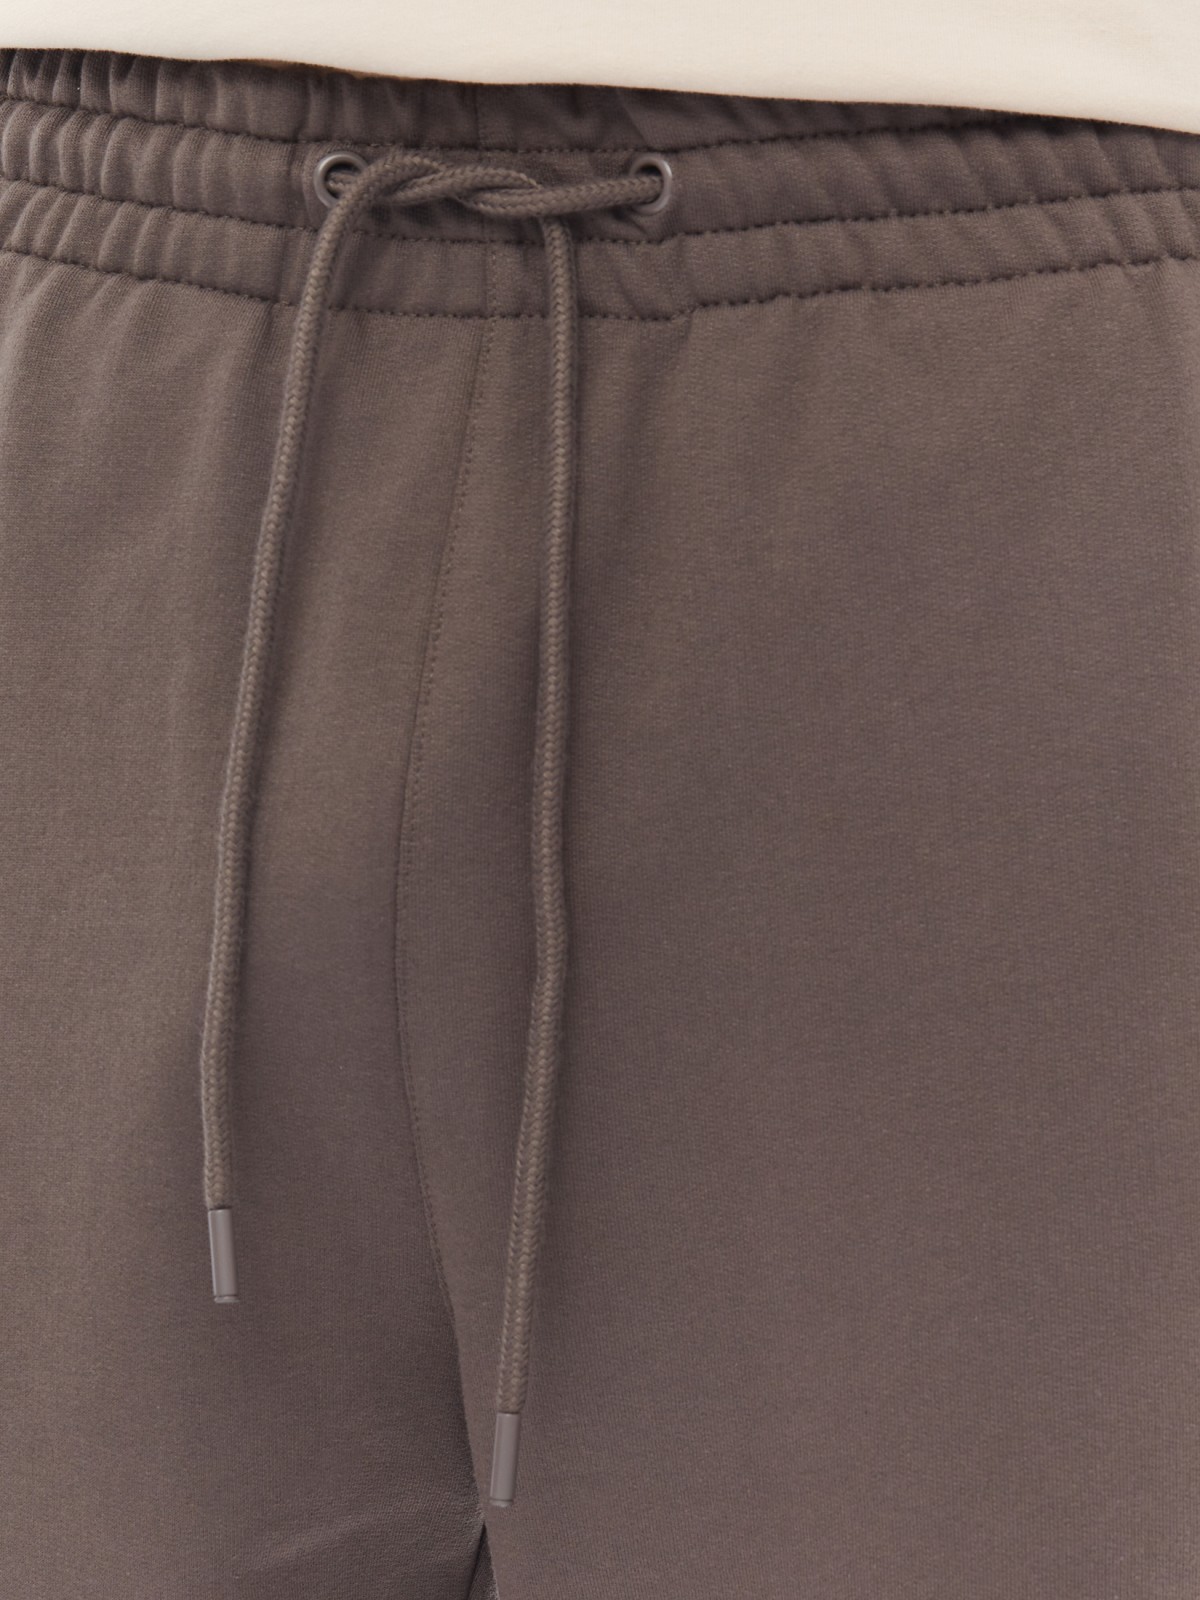 Трикотажные брюки-джоггеры в спортивном стиле zolla 014137660042, цвет серый, размер S - фото 4